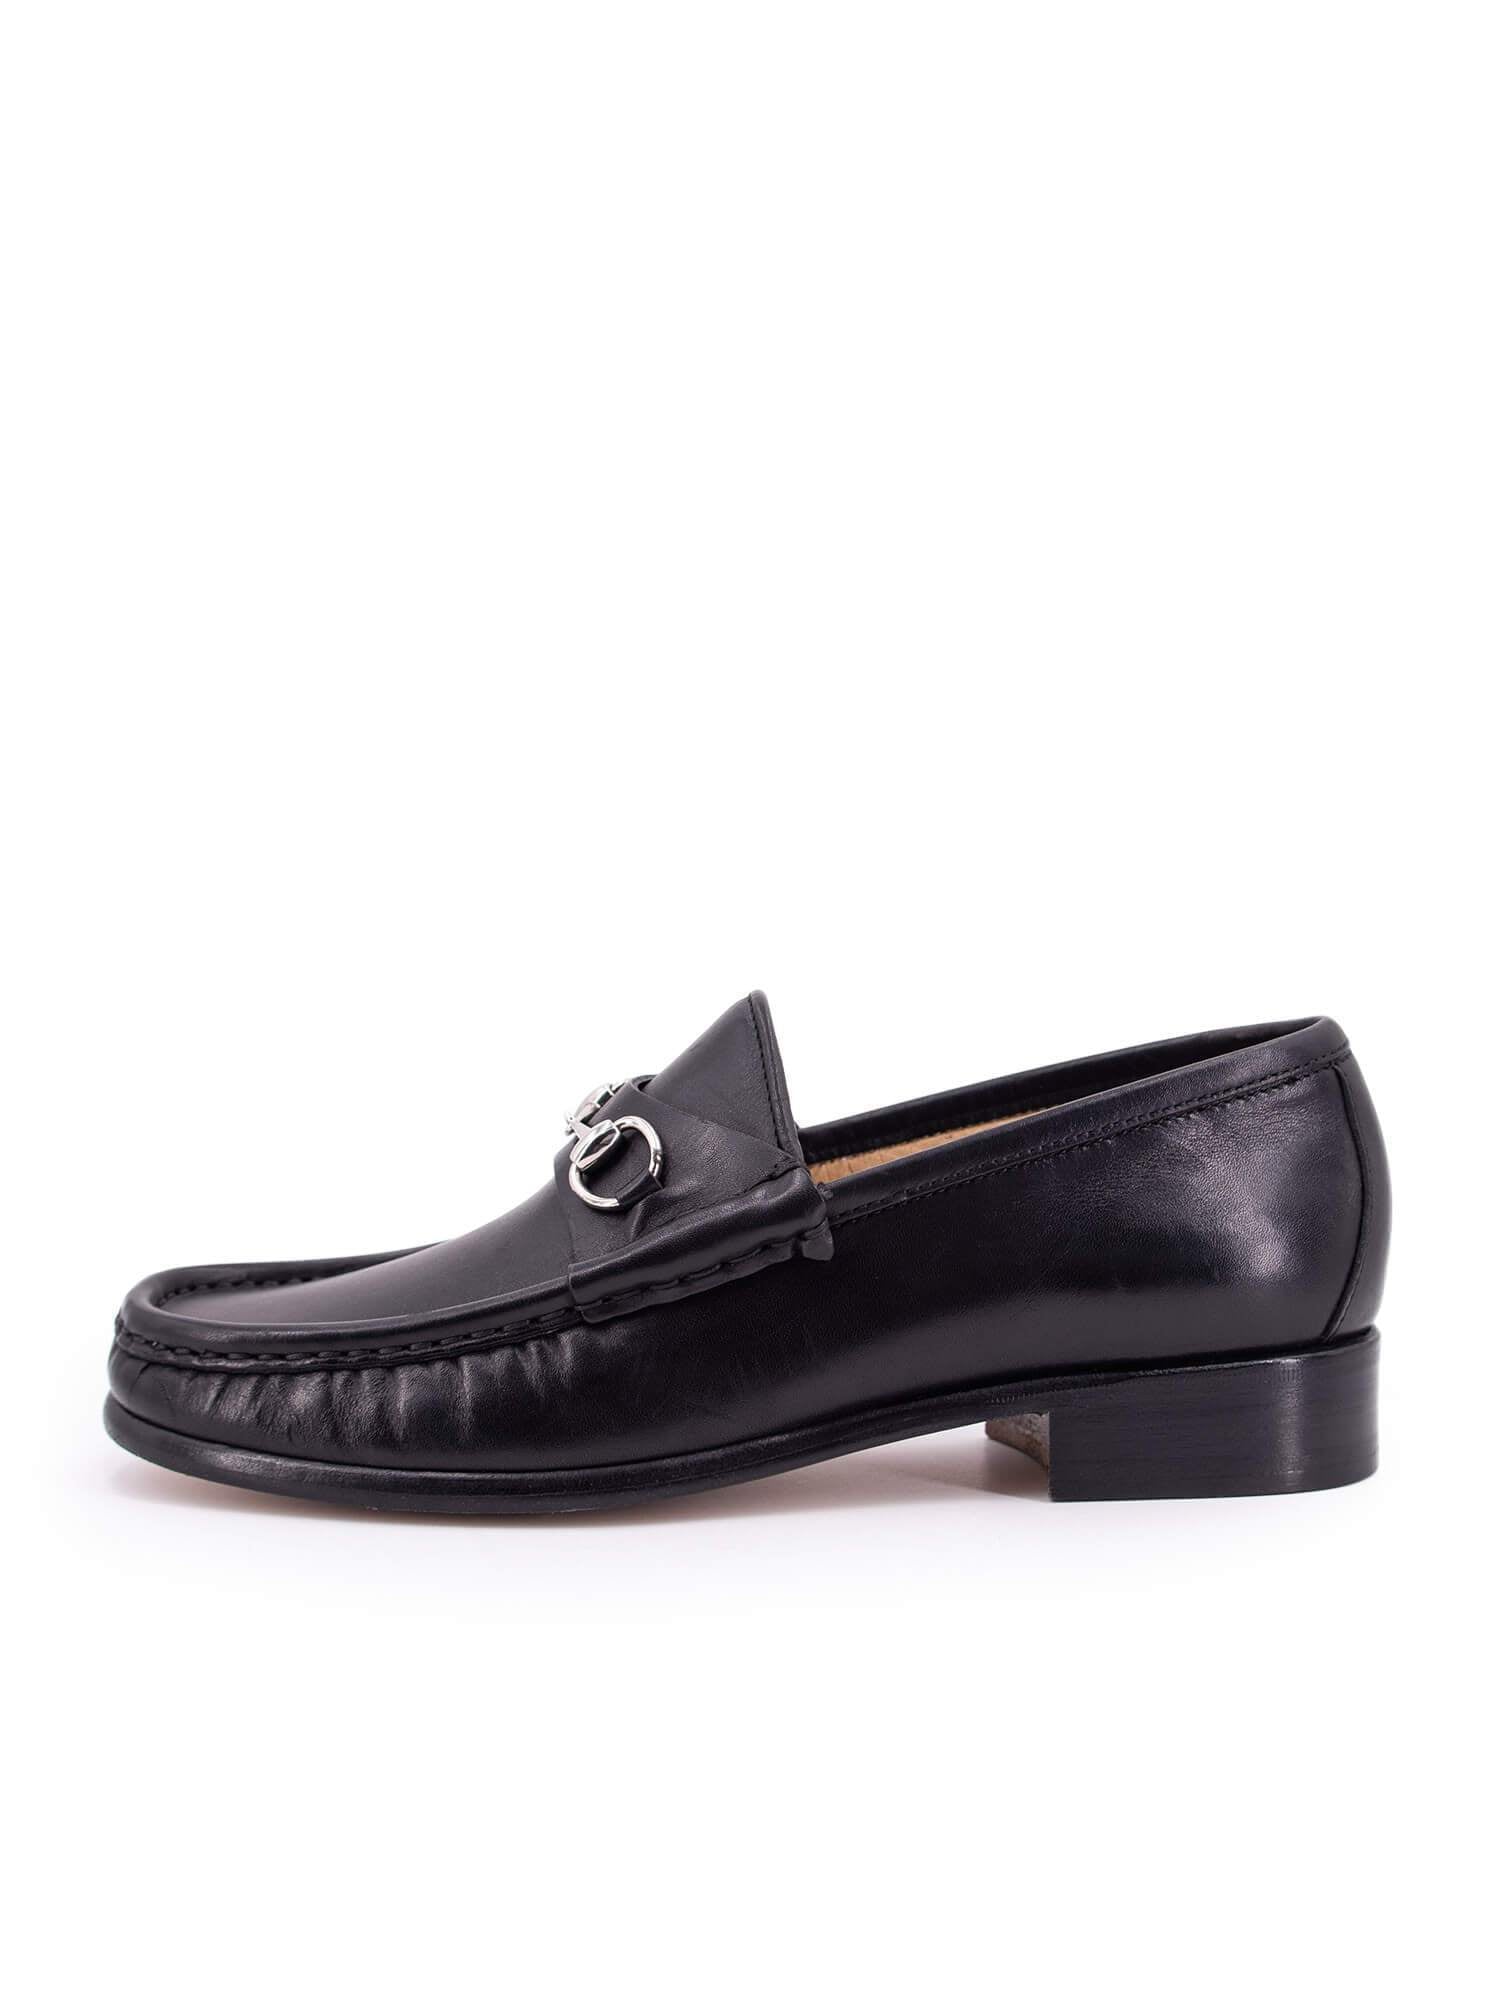 Gucci Leather Horsebit Loafers Black-designer resale